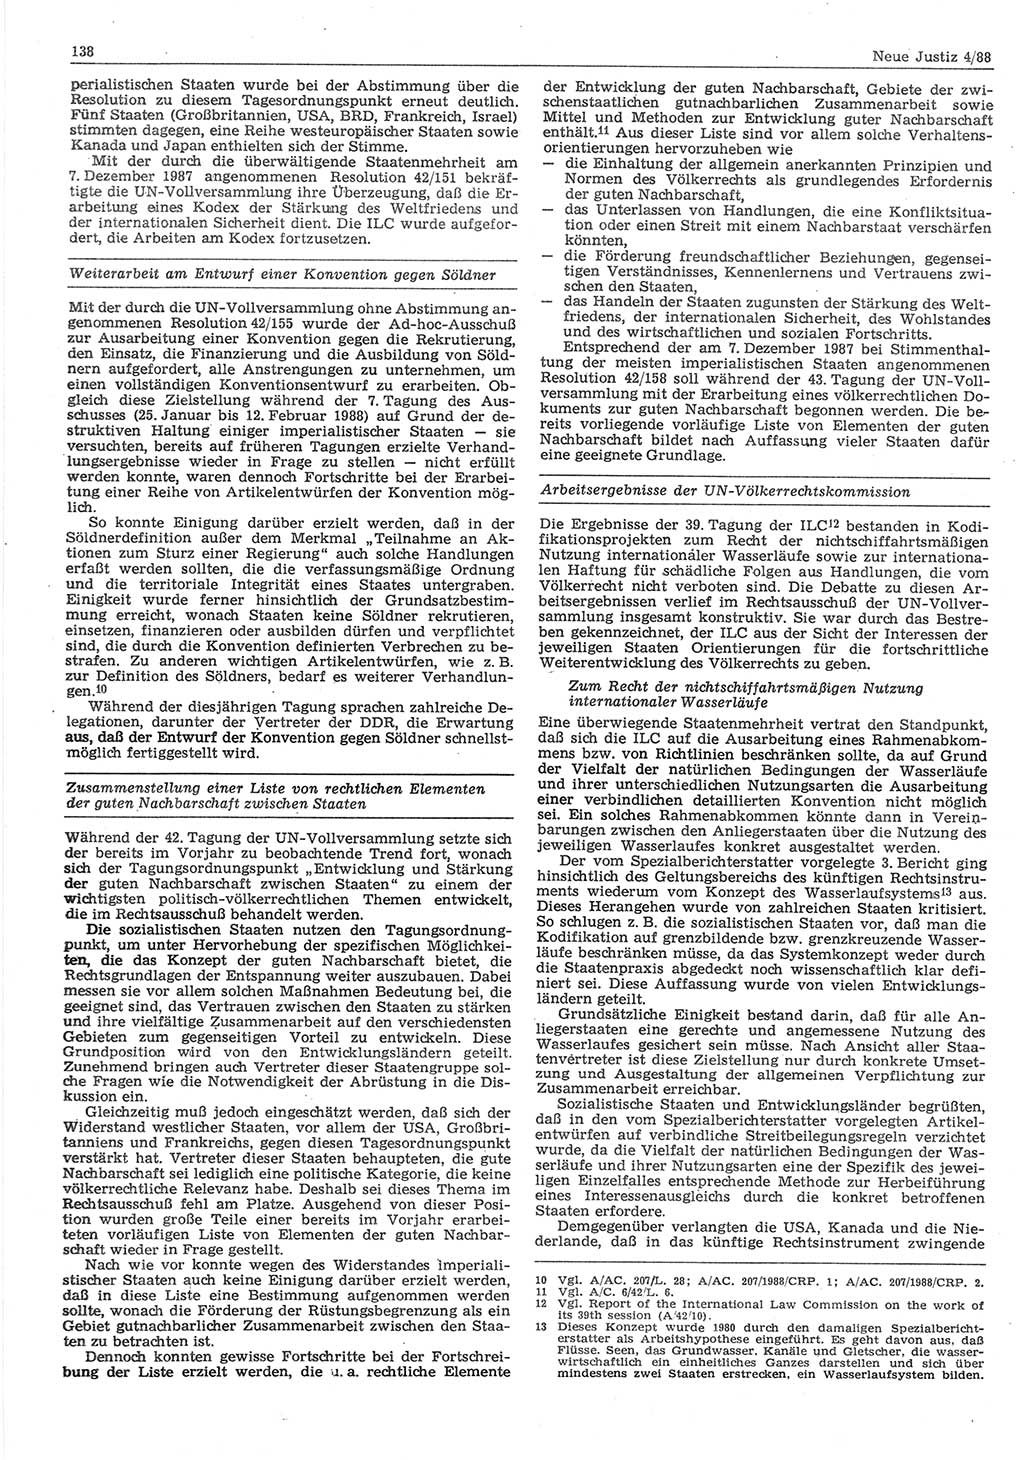 Neue Justiz (NJ), Zeitschrift für sozialistisches Recht und Gesetzlichkeit [Deutsche Demokratische Republik (DDR)], 42. Jahrgang 1988, Seite 138 (NJ DDR 1988, S. 138)